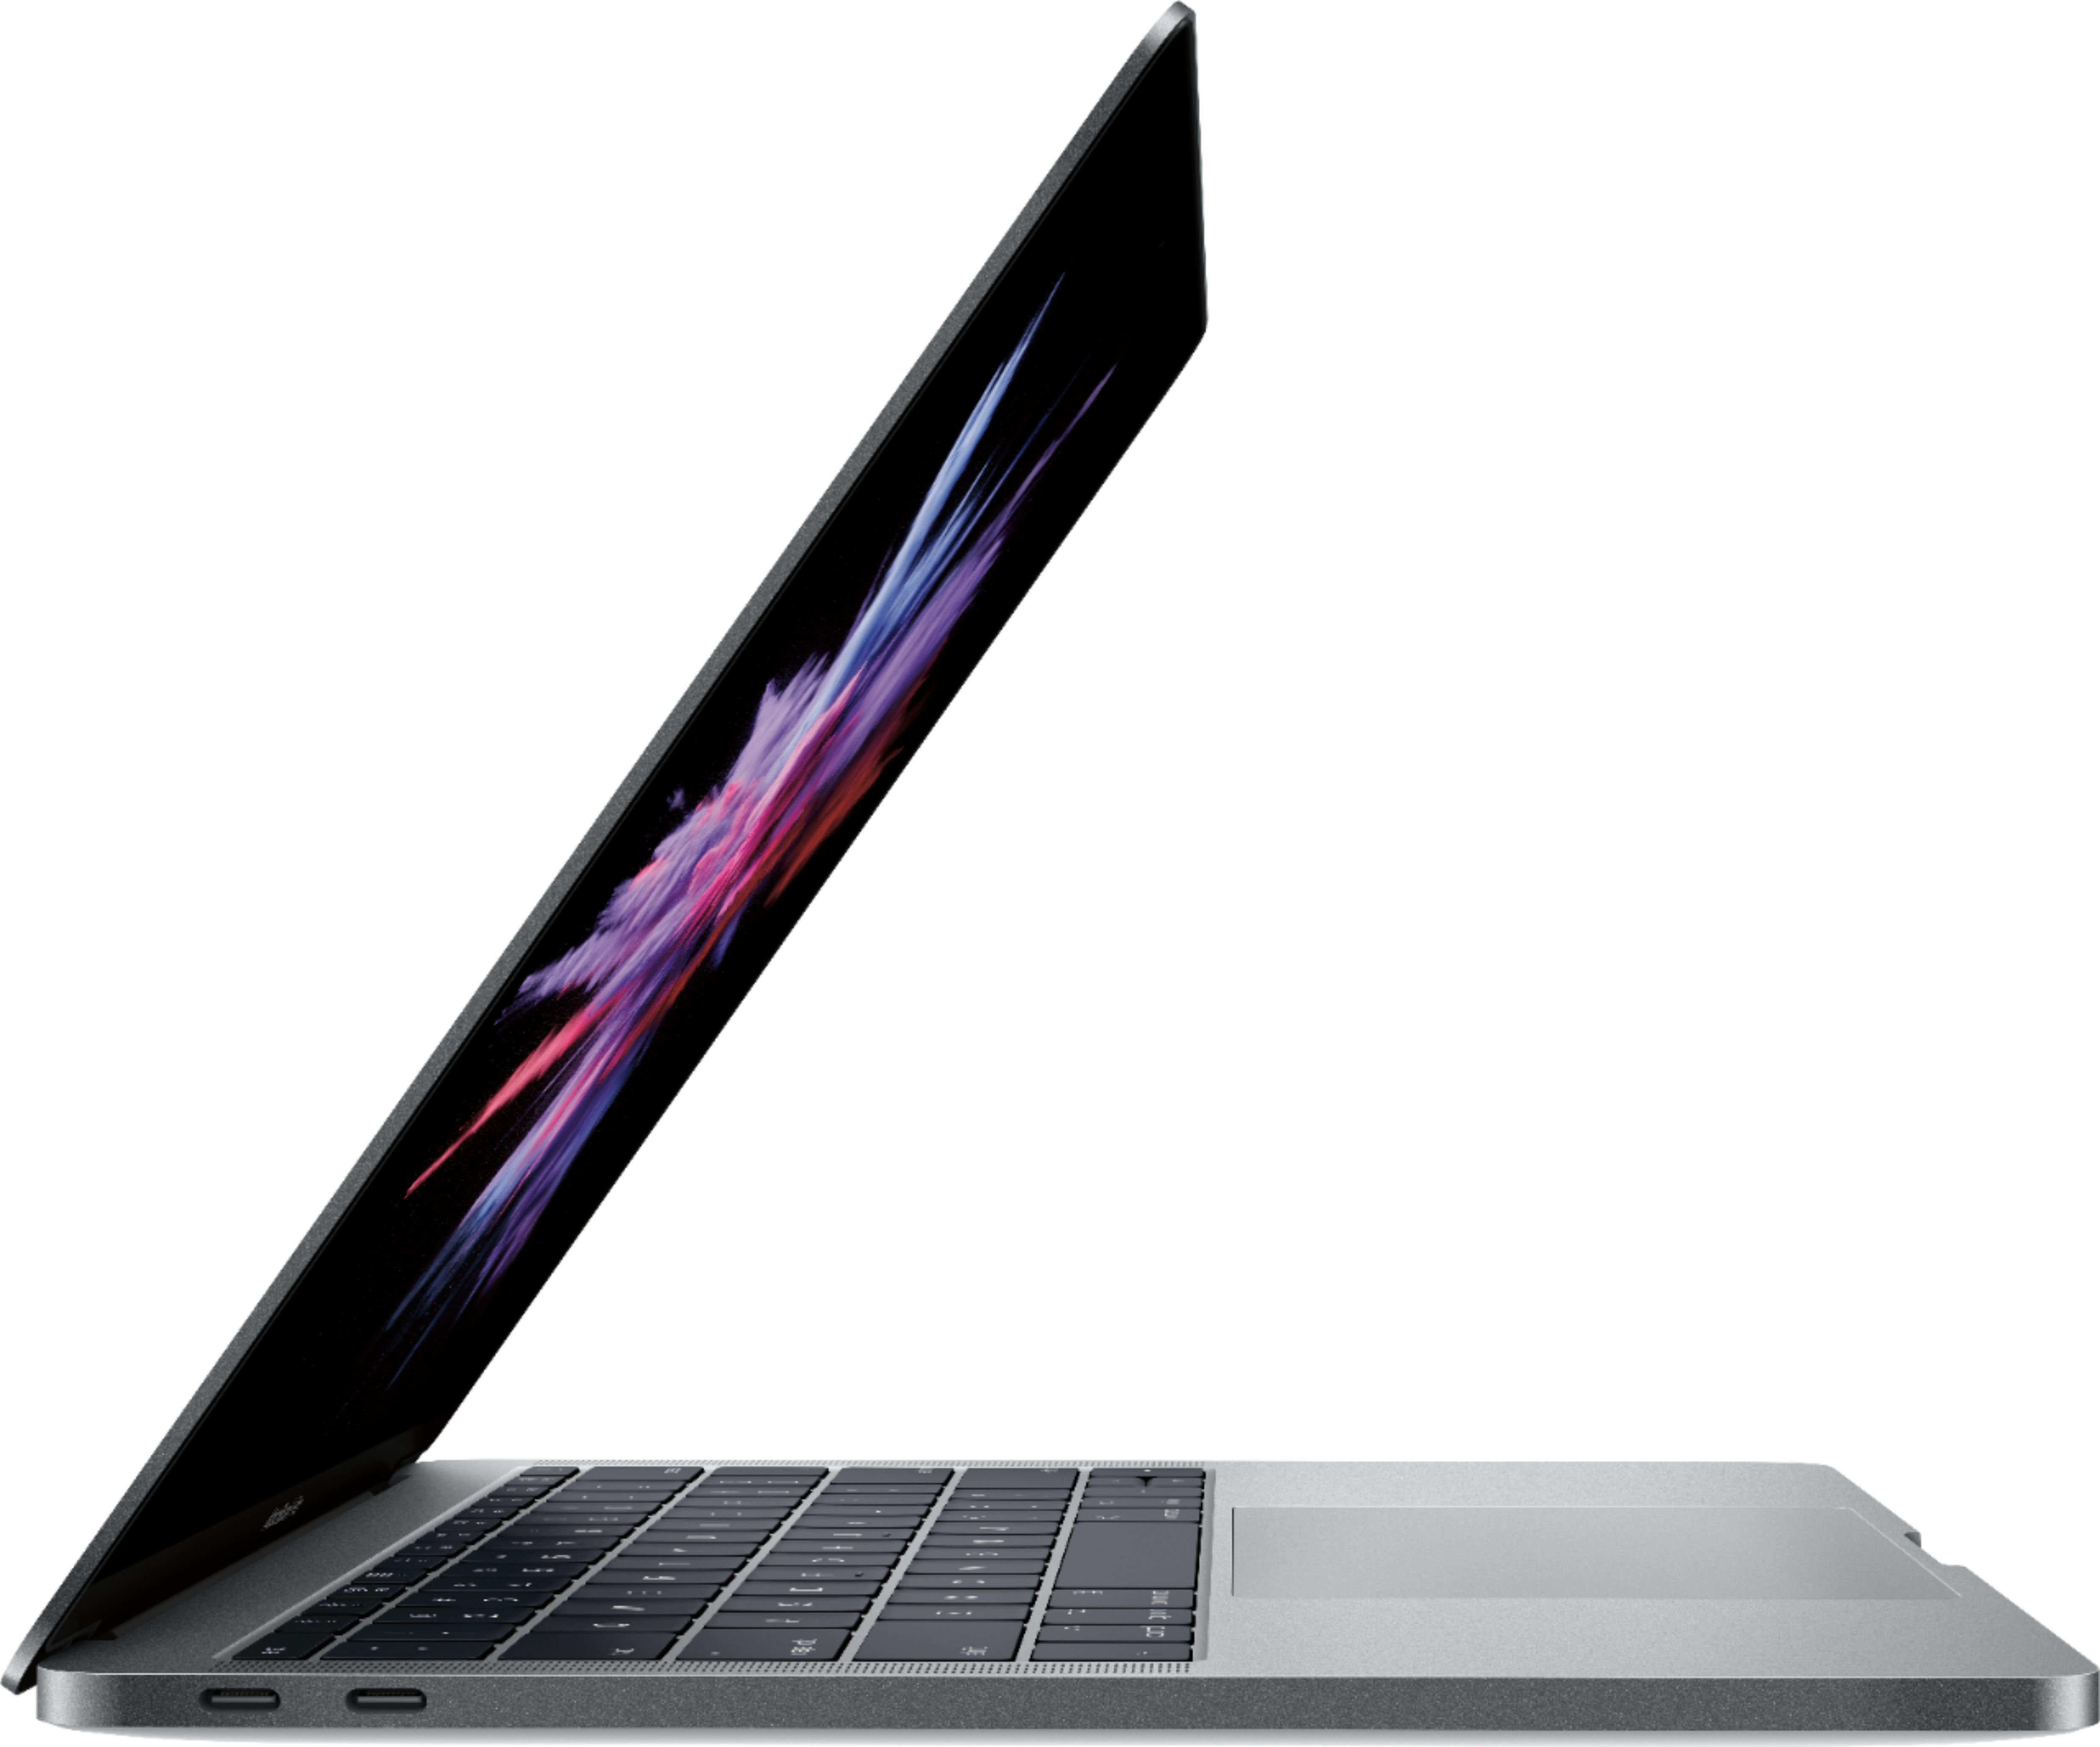 Best Buy: Apple MacBook Pro 13